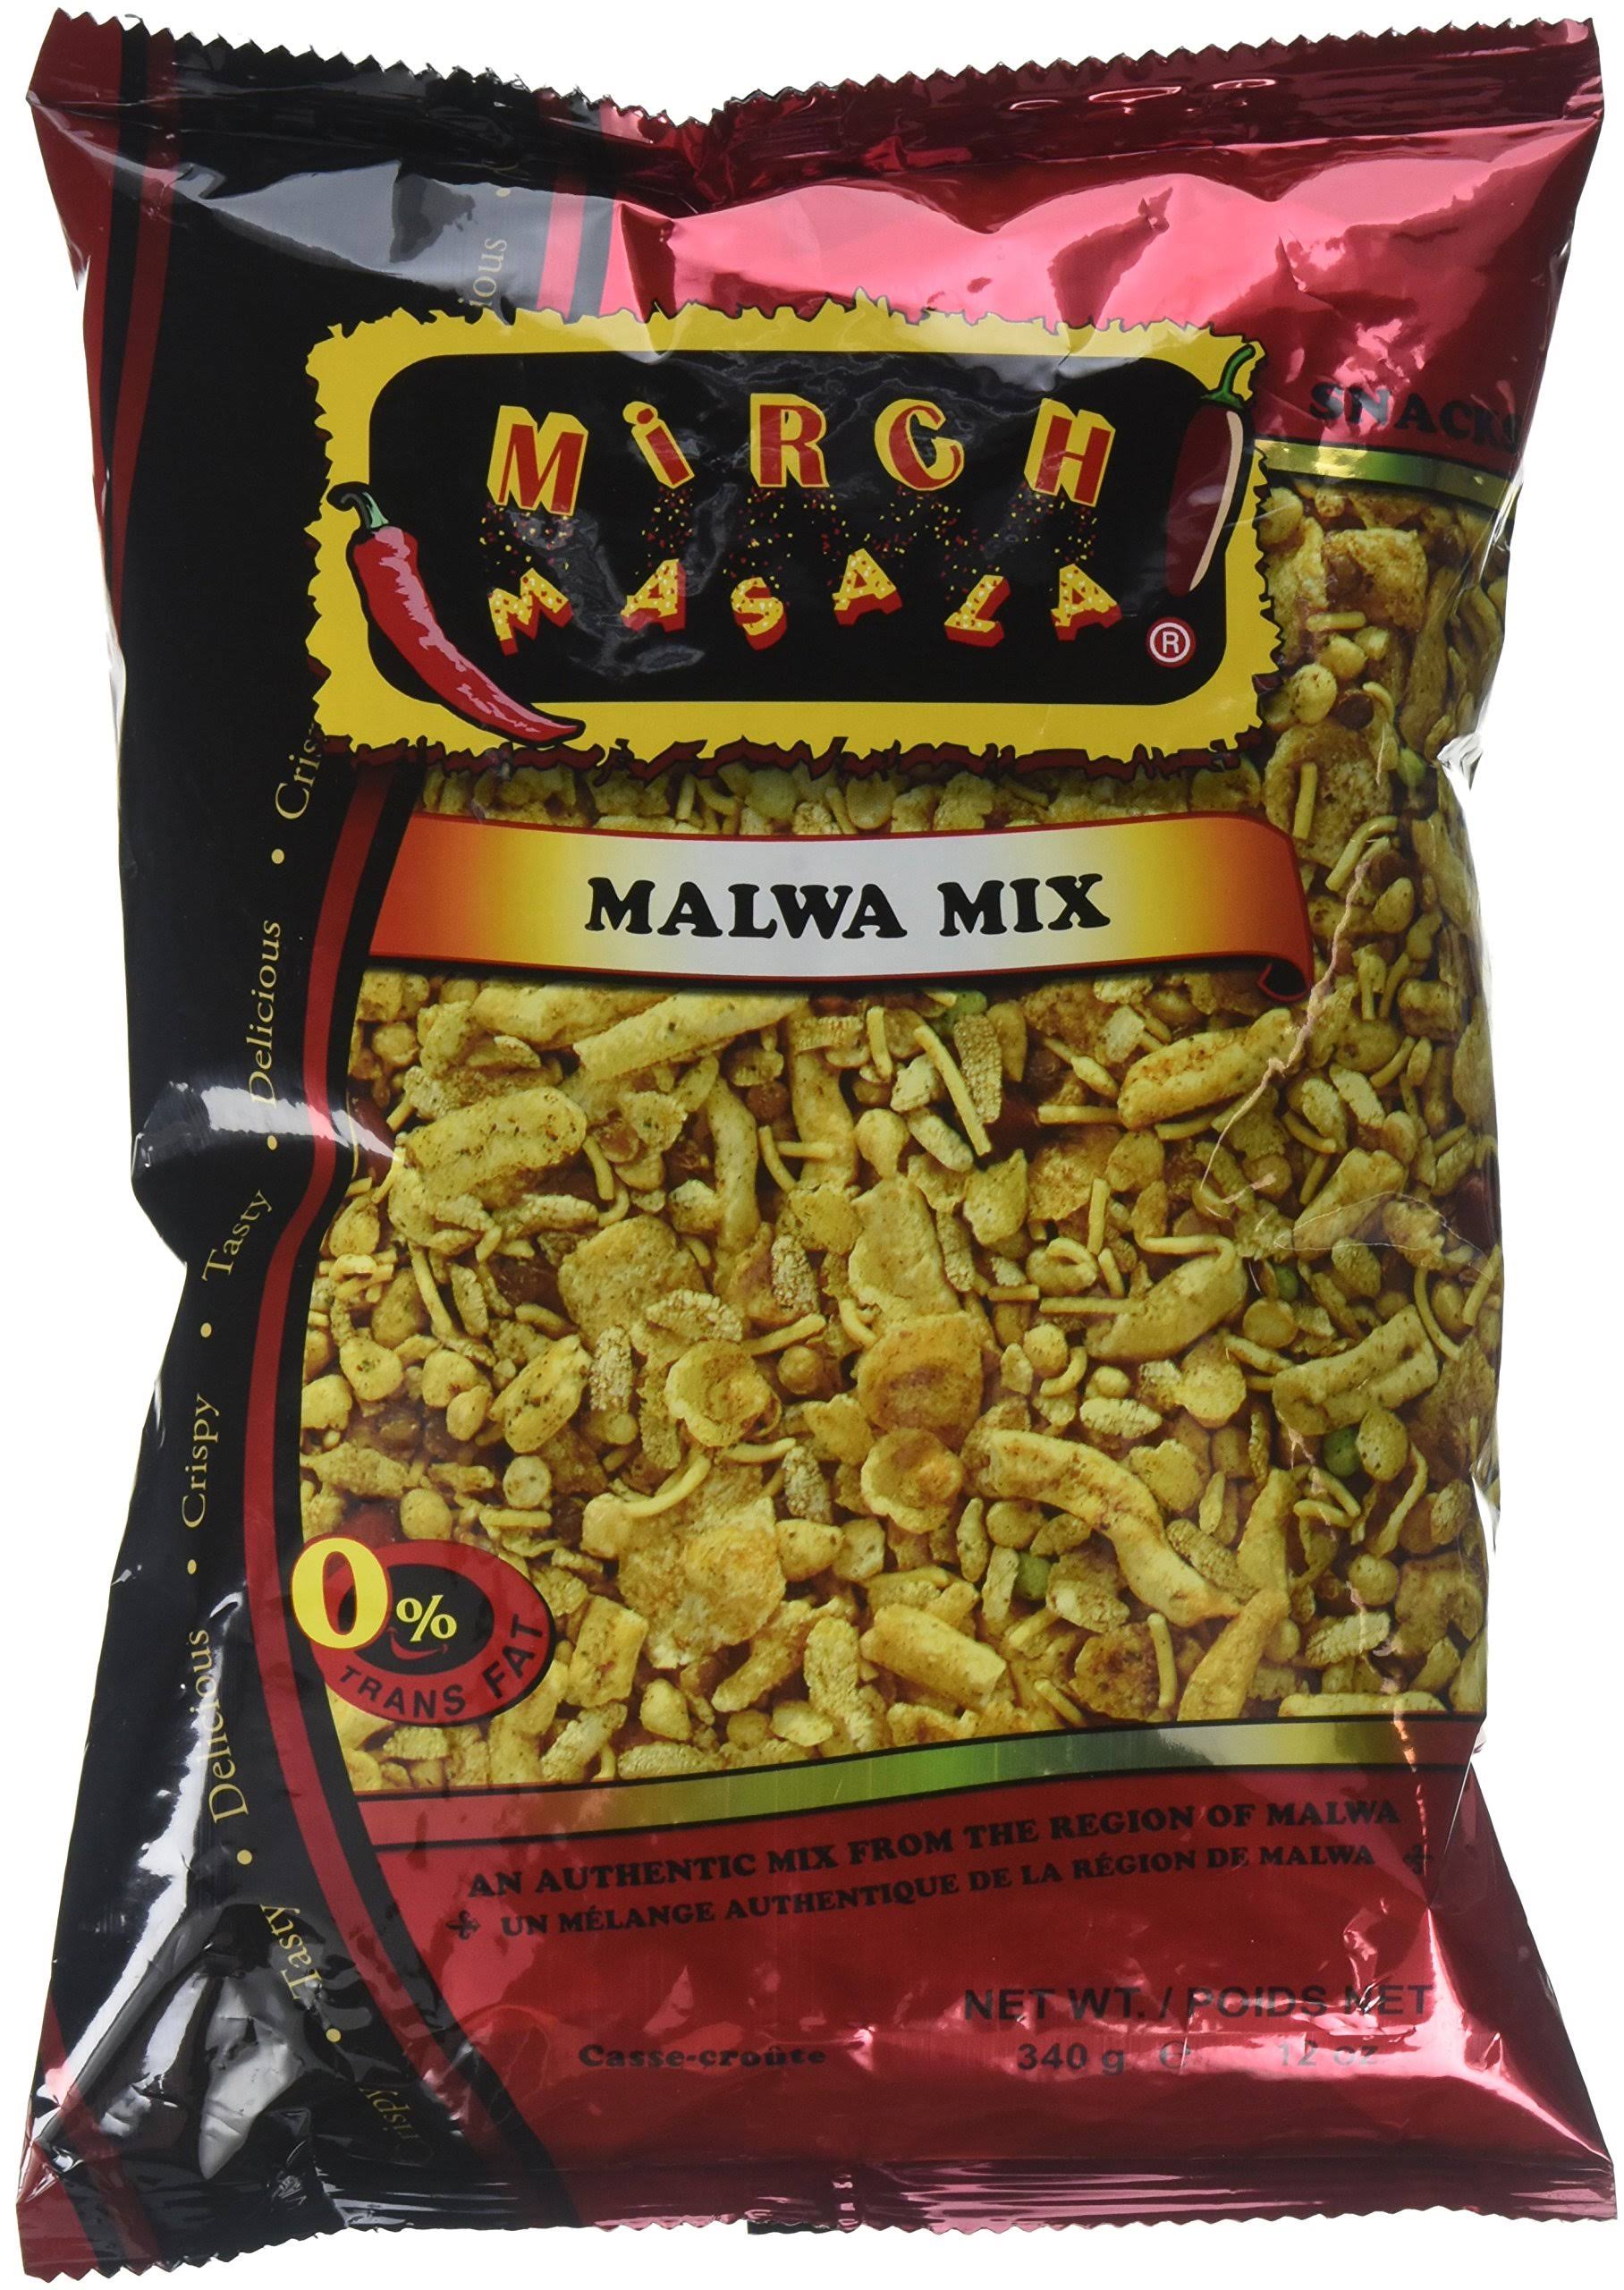 Mirch Masala Malwa Mix 12 oz